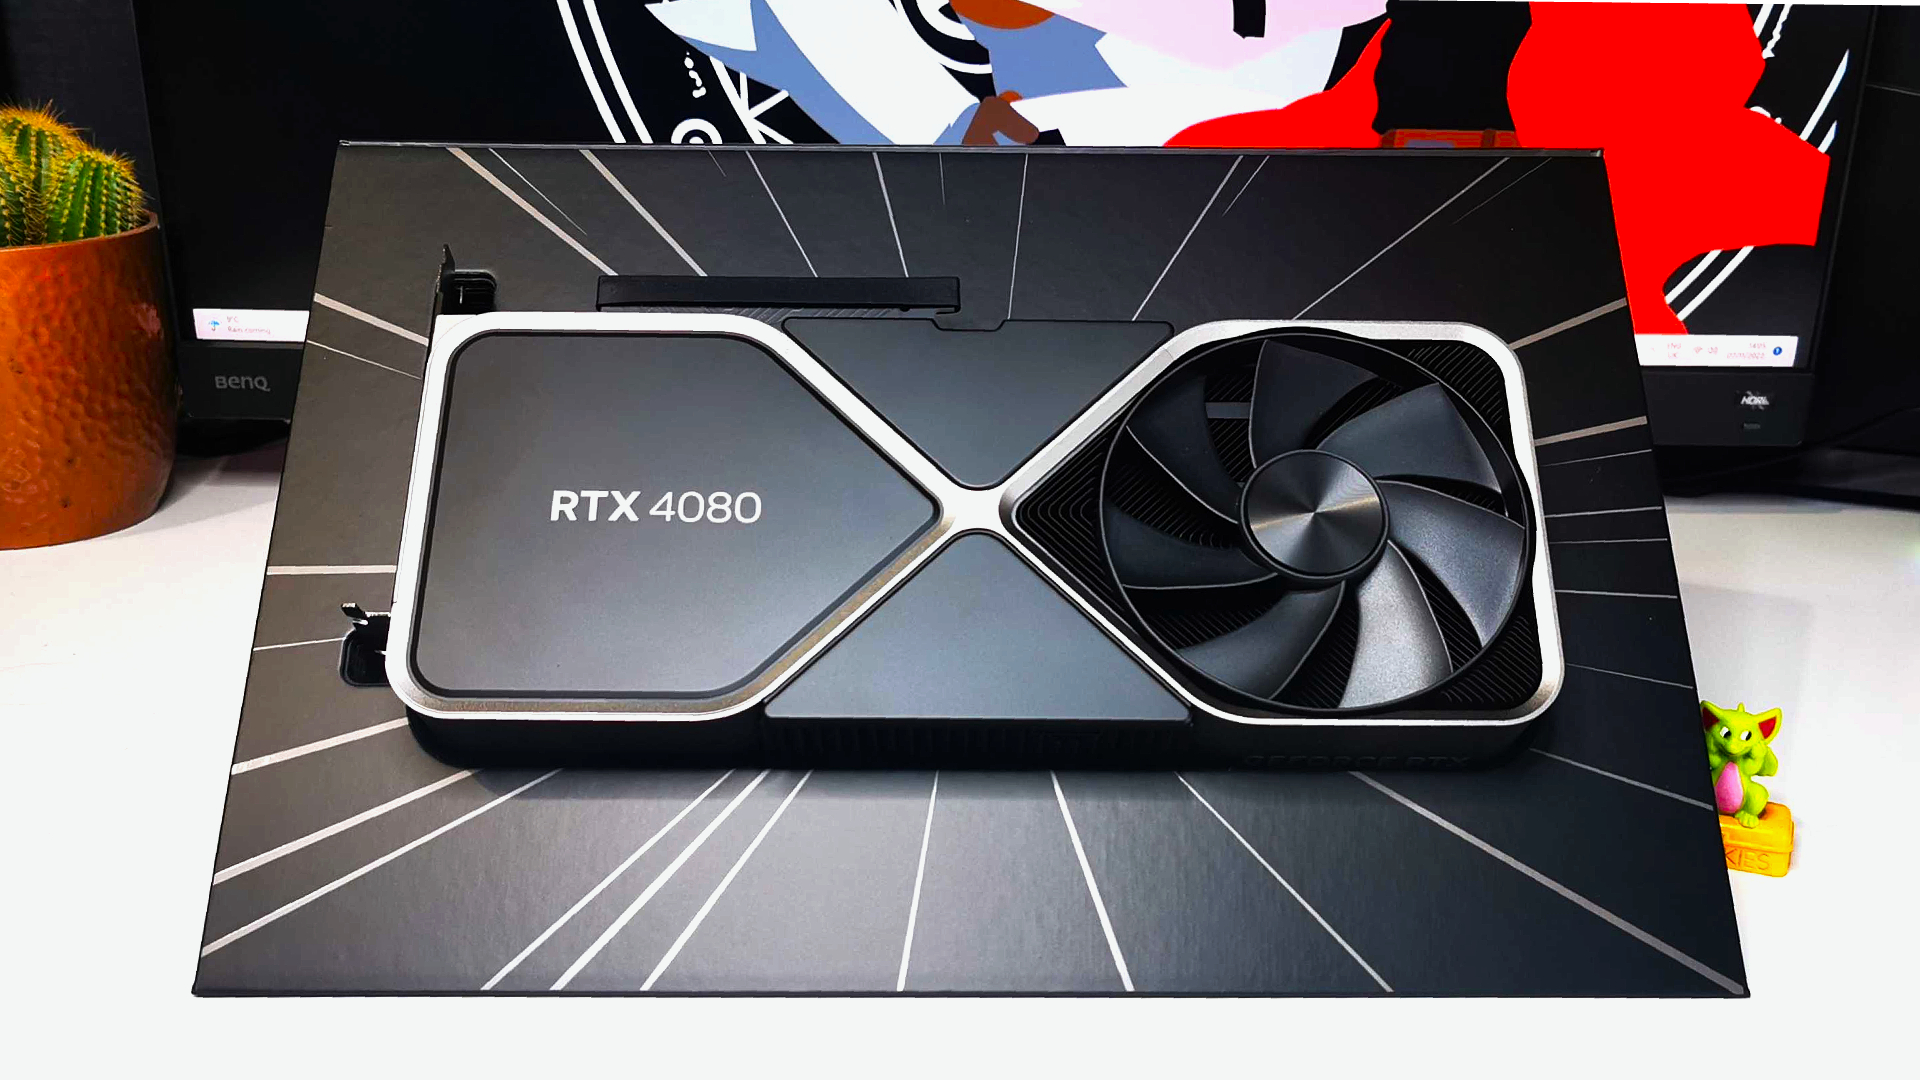 NVIDIA RTX 4080 Graphics Card sitzt in Geforce -Verpackungen auf weißem Schreibtisch